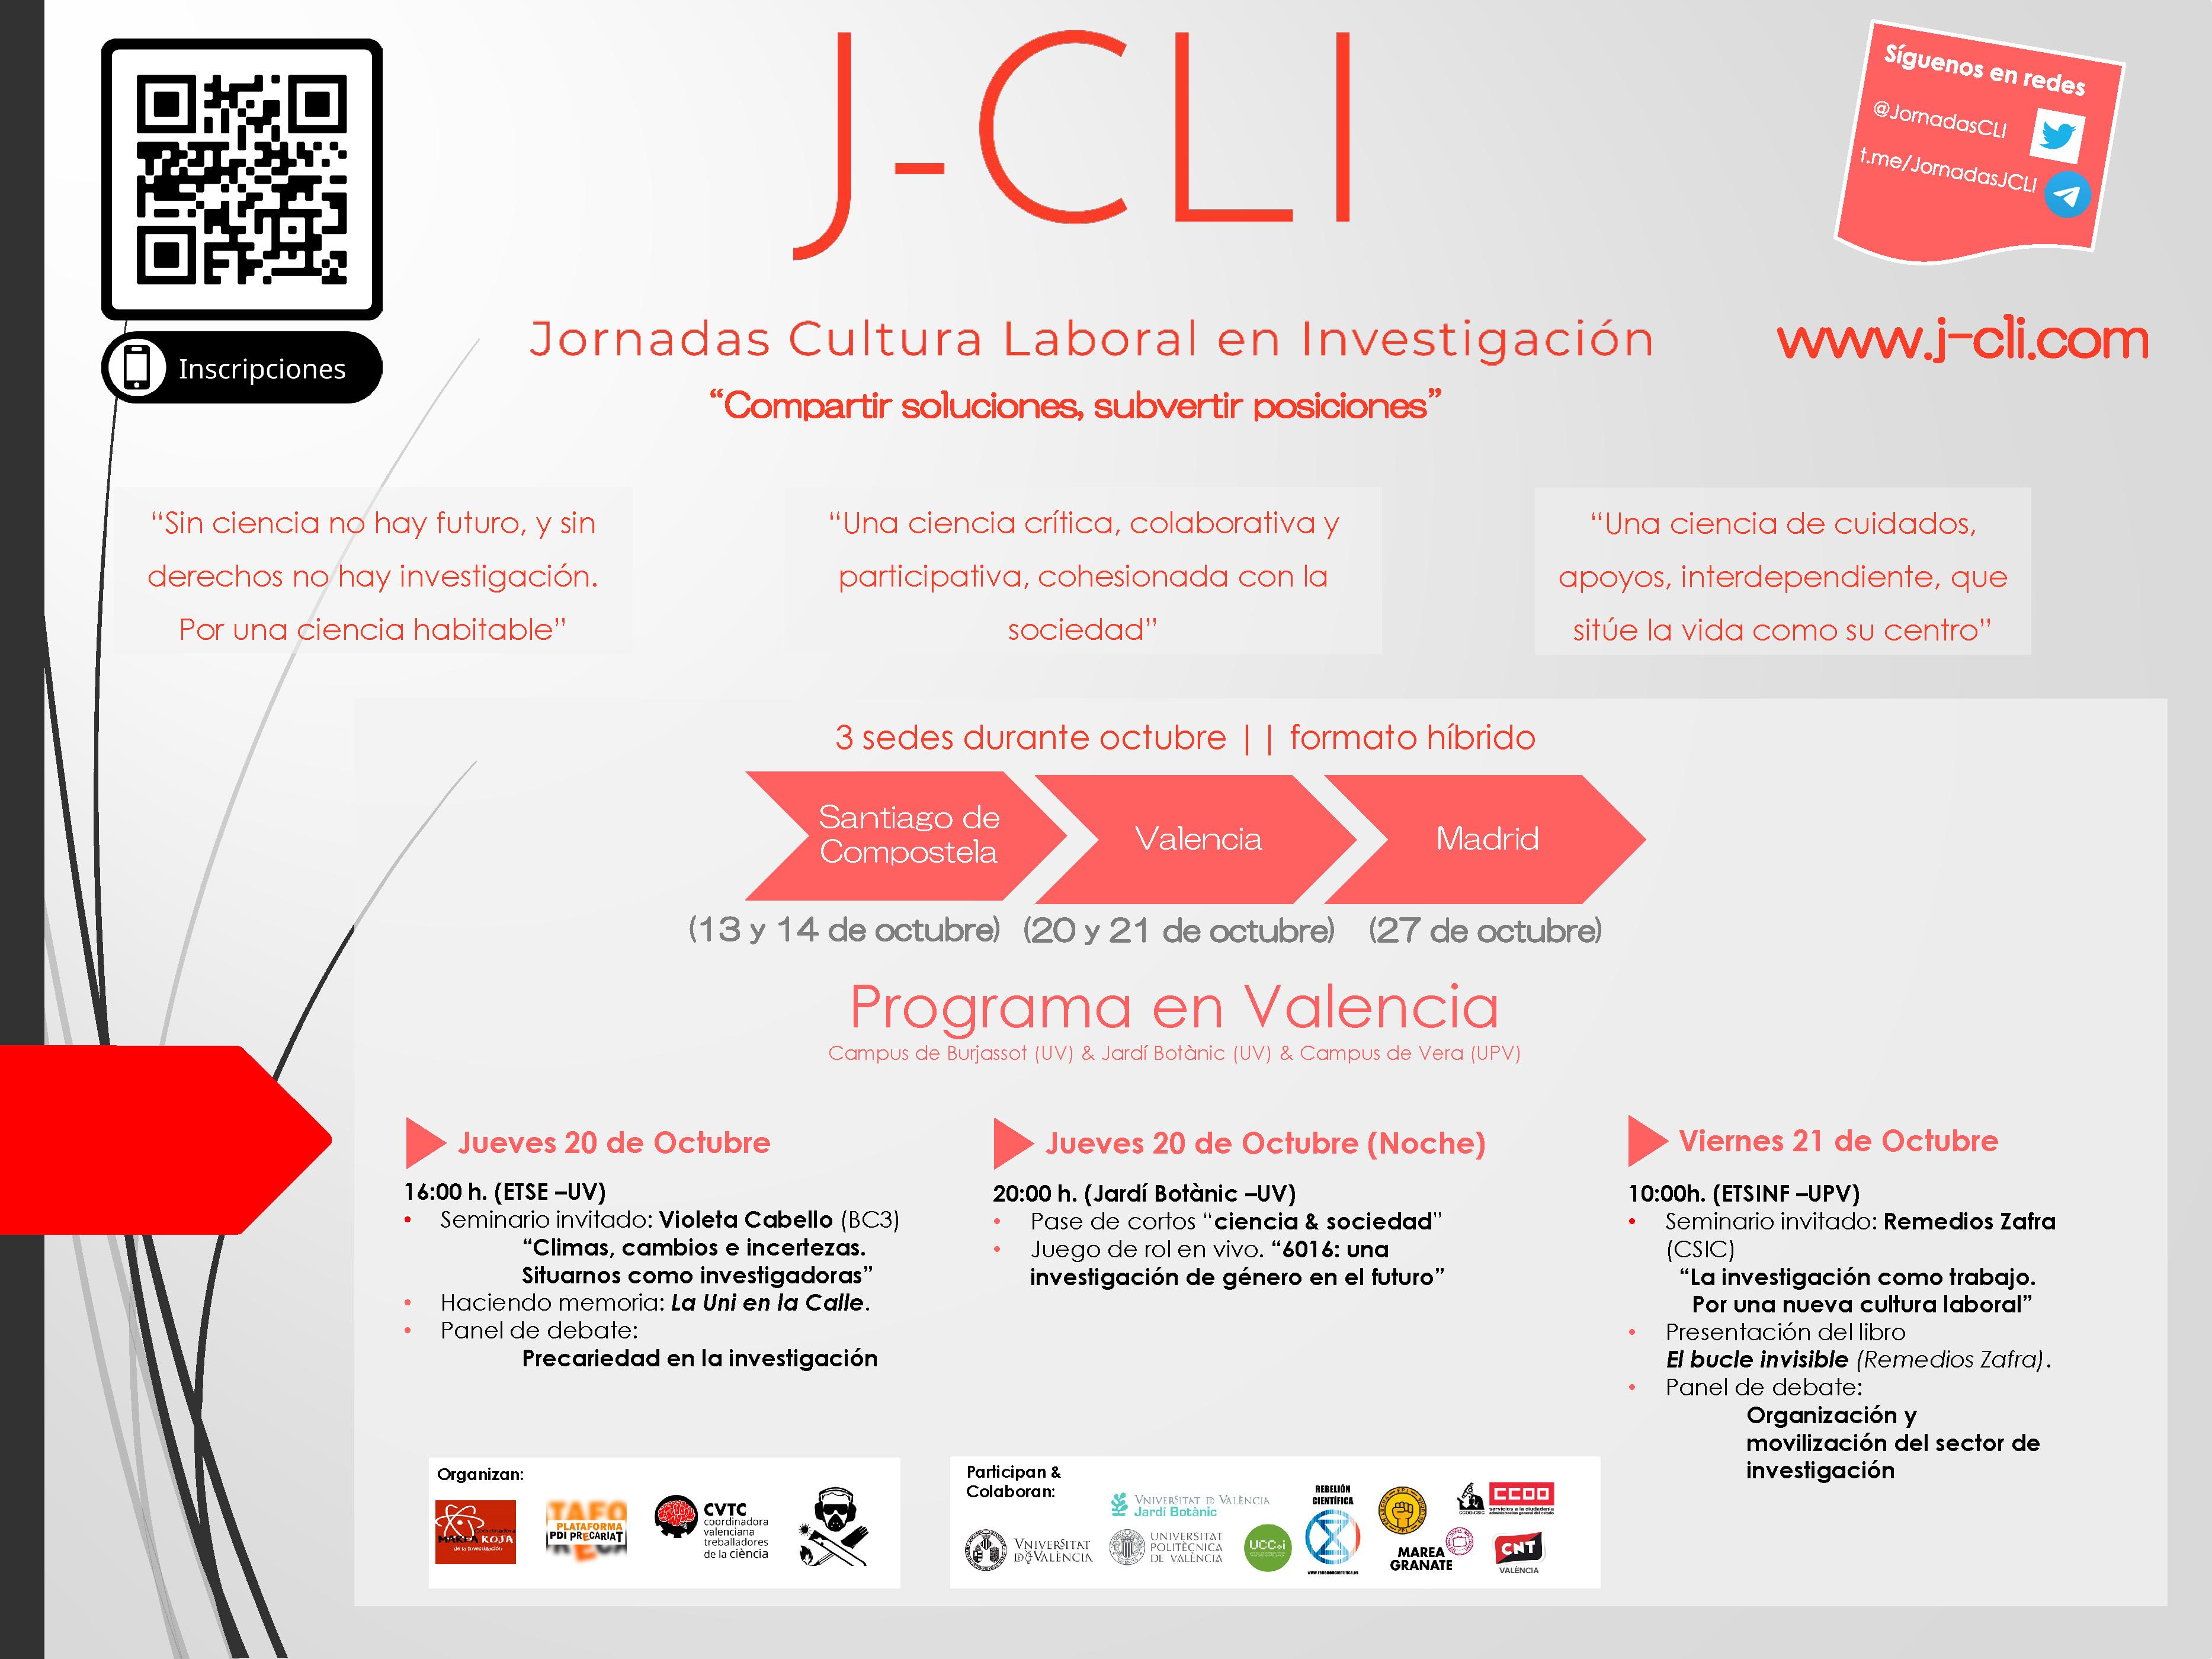 ETSE | Jornadas de Cultura Laboral en Investigación (J-CLI)